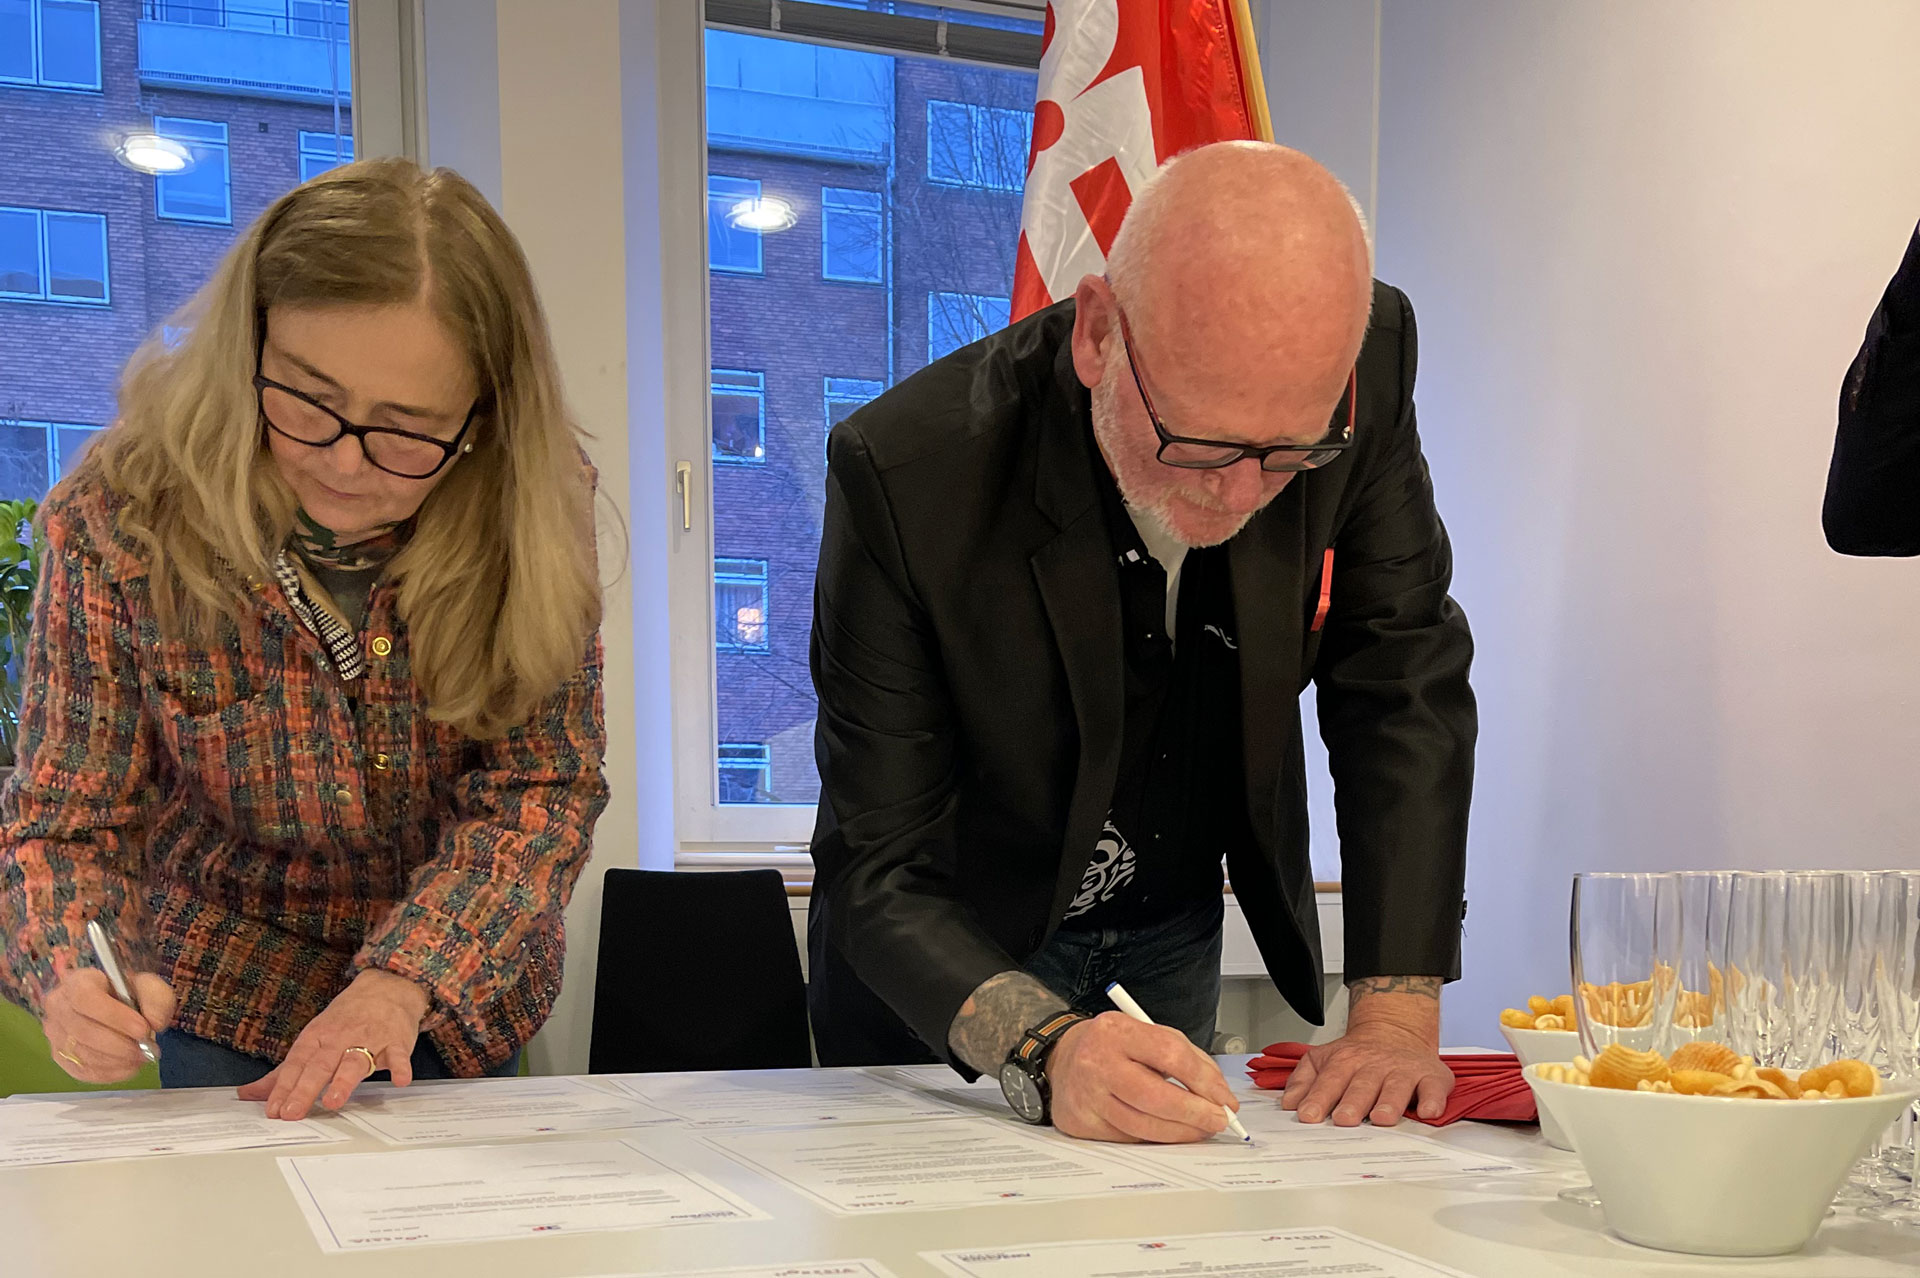 HORESTAs adm. direktør, Pia E. Voss, underskriver den nye overenskomstaftale sammen med John Frederiksen fra 3F.